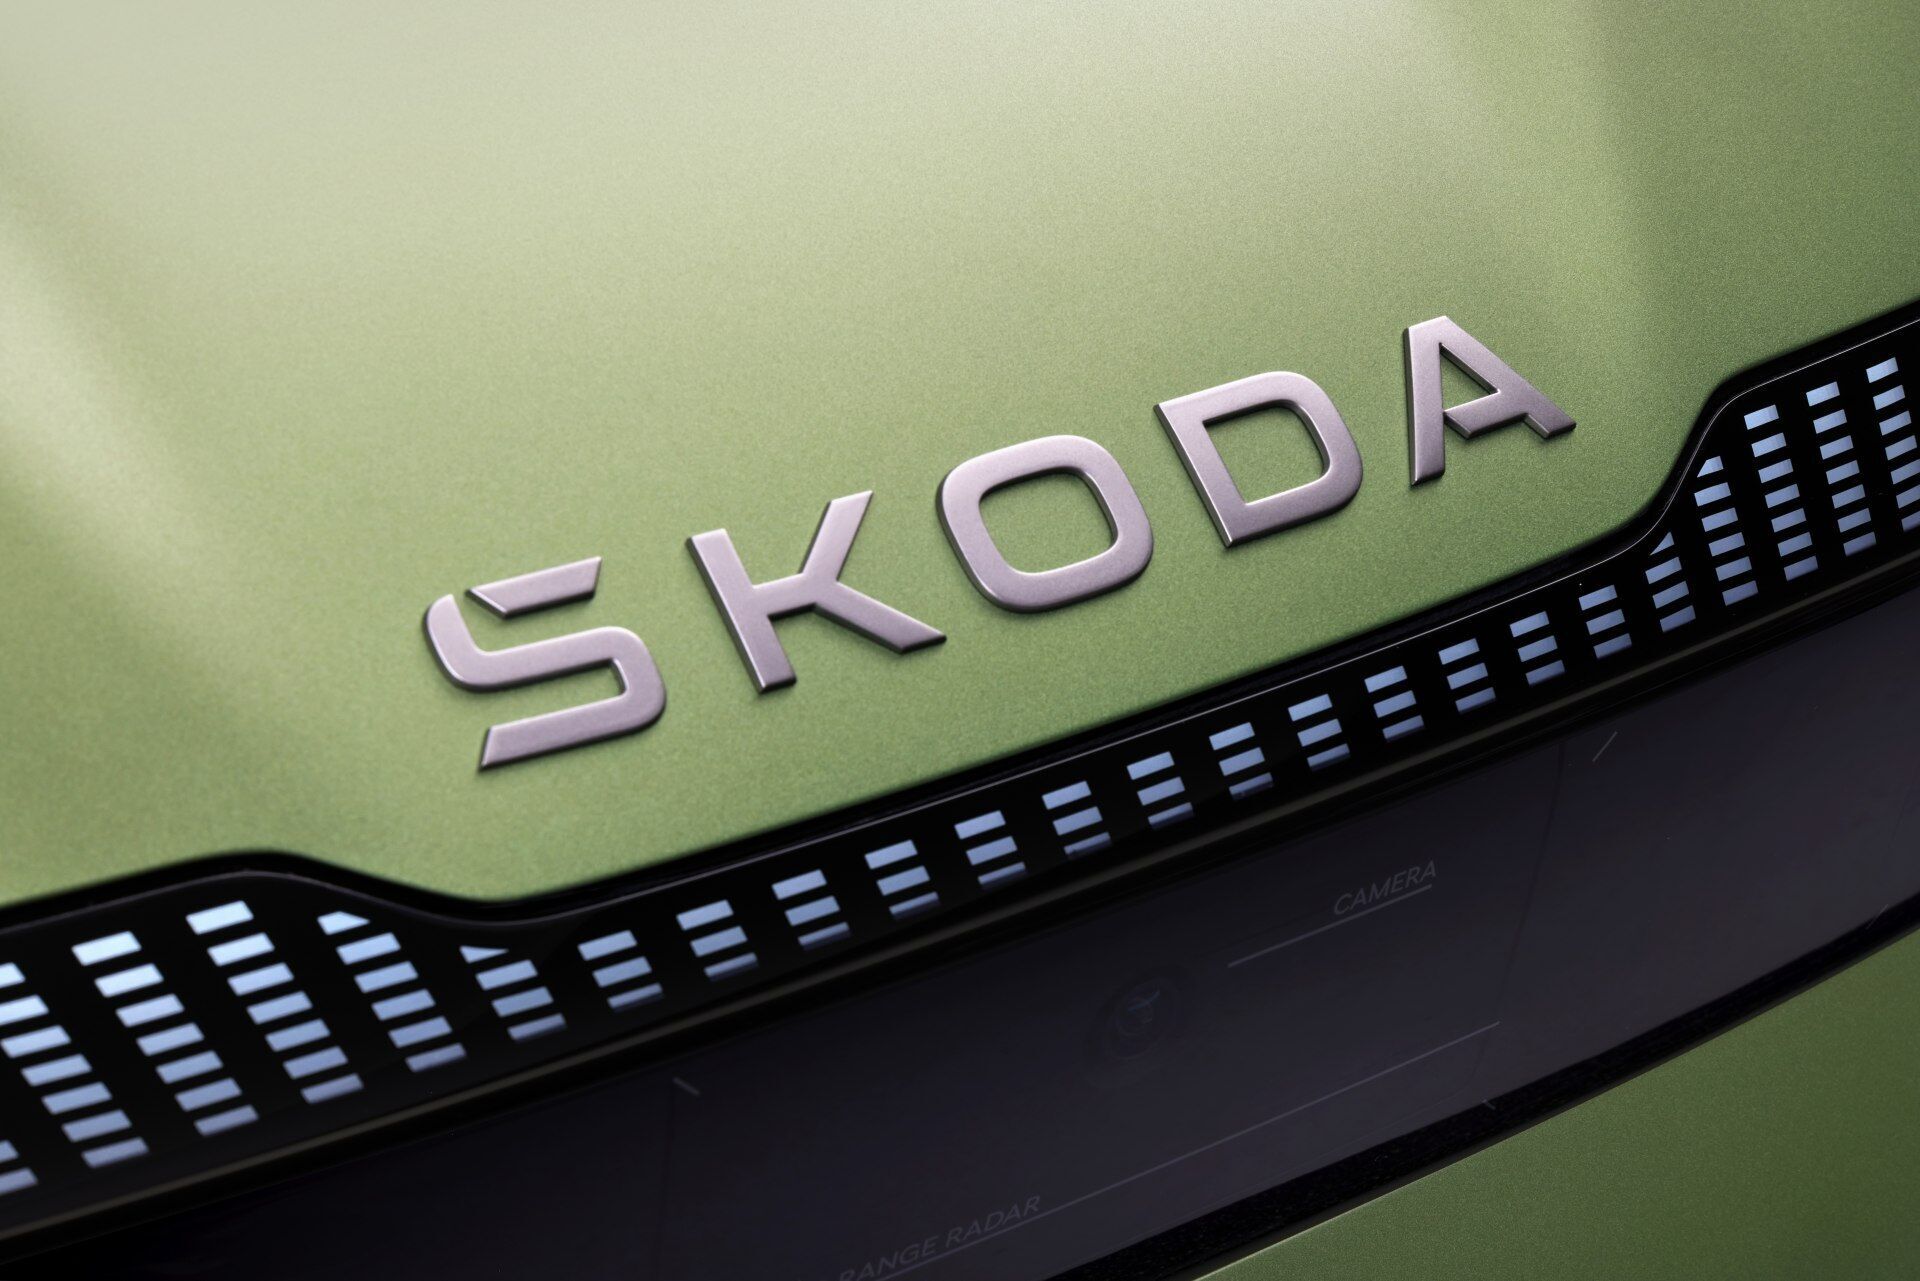 Замість зображення крилатої стріли розміщено текстовий логотип Skoda